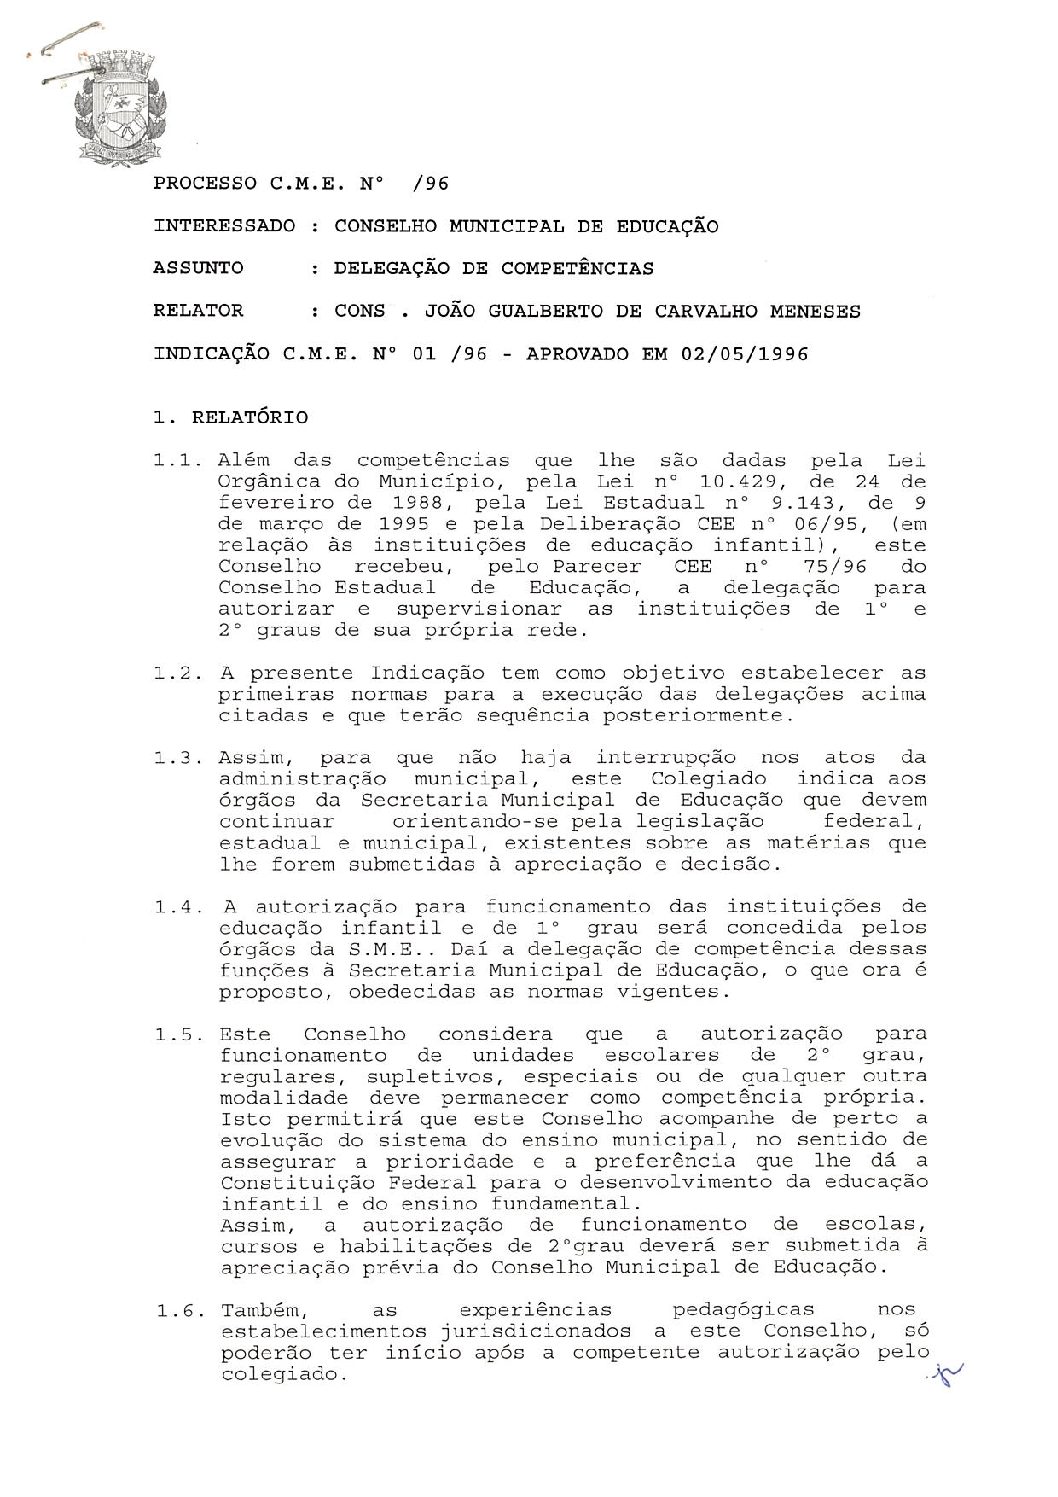 Indicação CME nº 01/1996 - Delegação de Competências